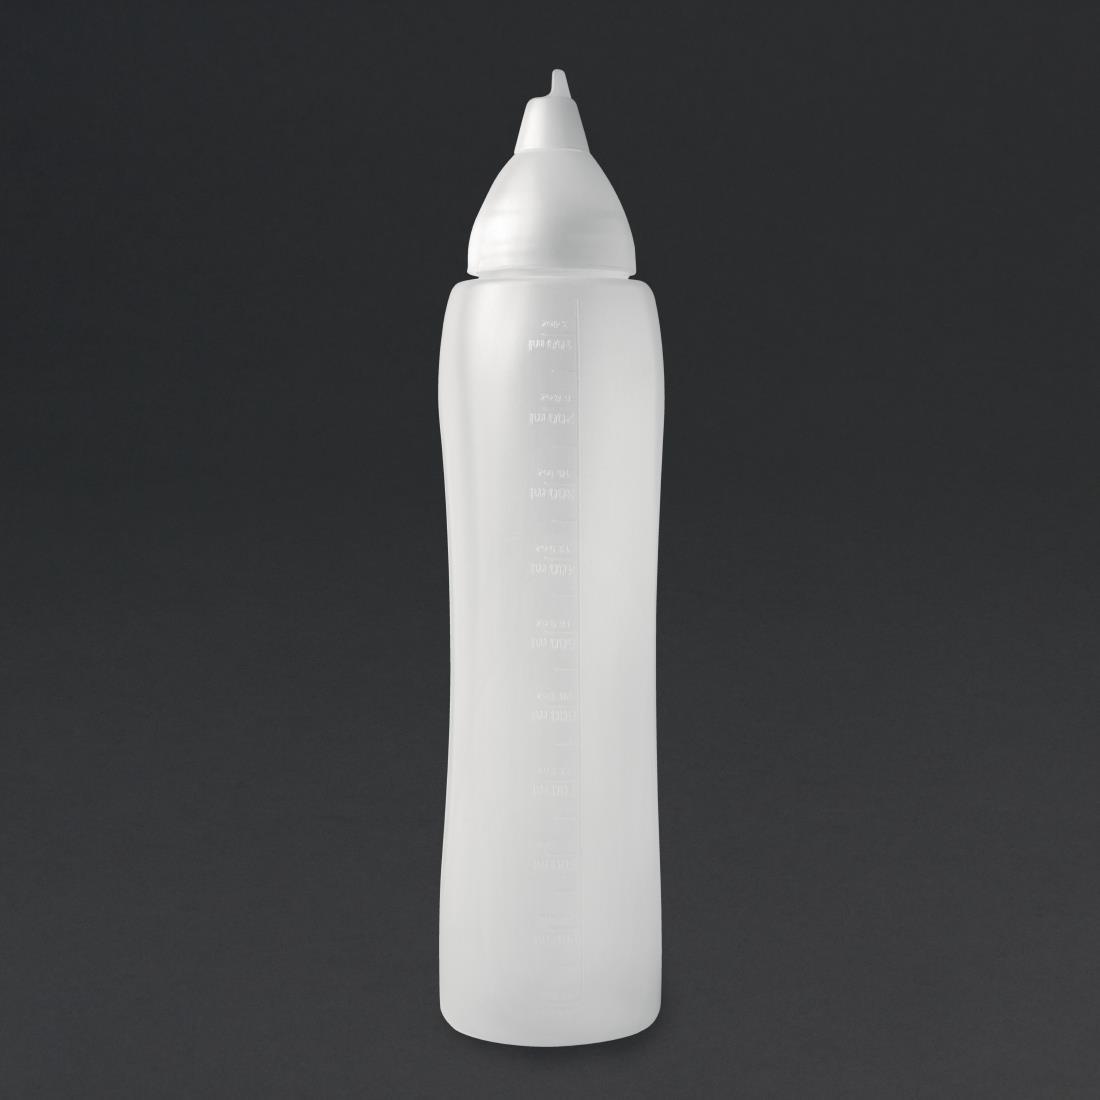 Araven Clear Non-drip Sauce Bottle 35oz - CW114  - 1